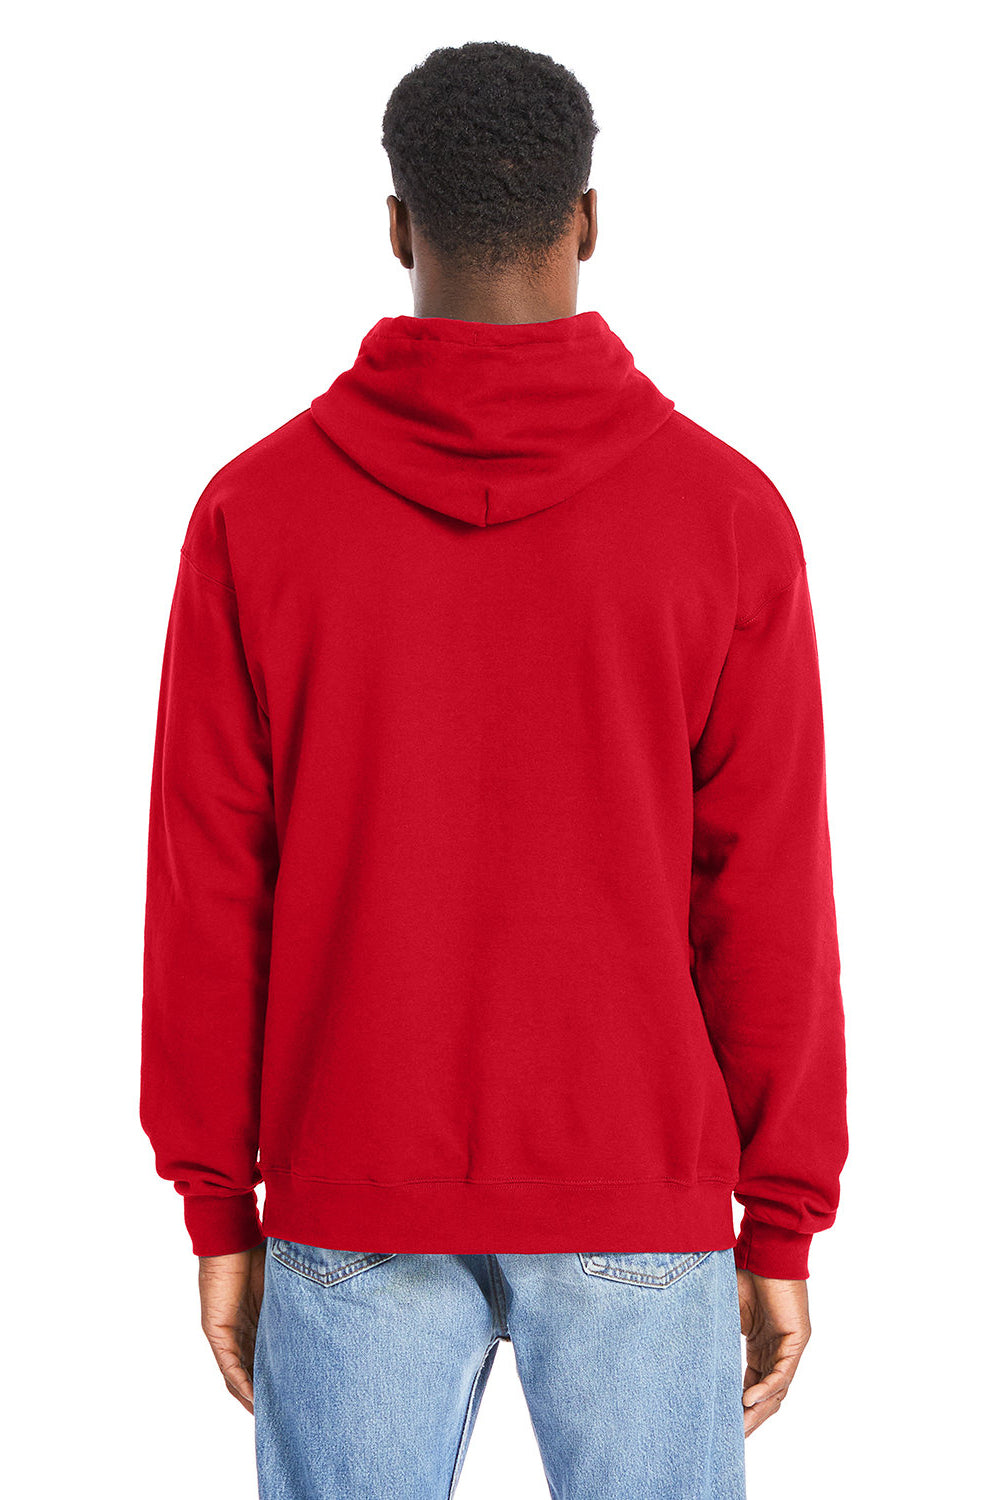 Hanes RS170 Mens Perfect Sweats Hooded Sweatshirt Hoodie Athletic Red Back